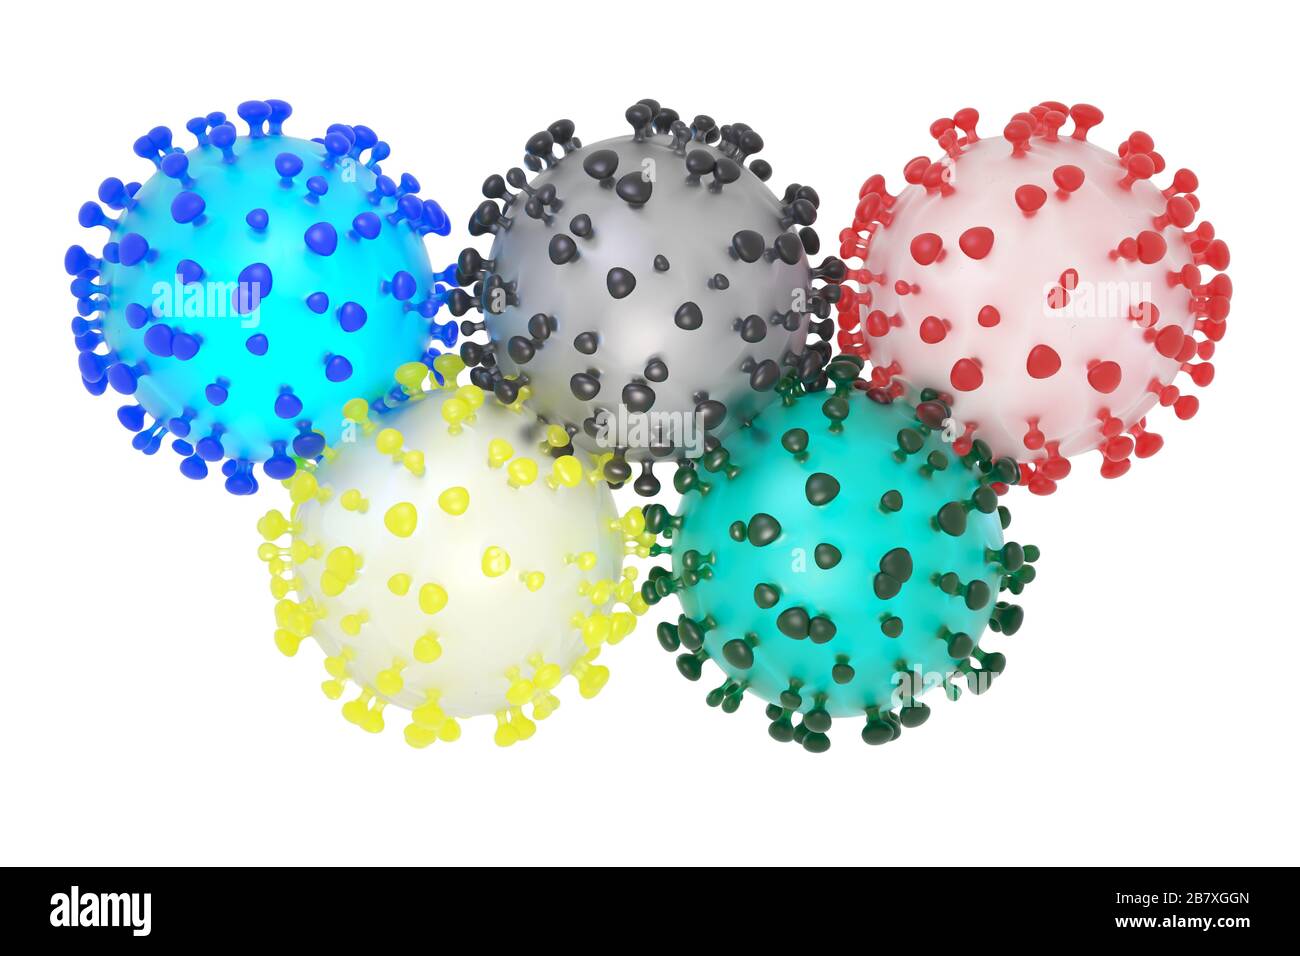 Illustrazione simbolica in 3D del coronavirus sars-cov-2 e degli anelli olimpici Foto Stock